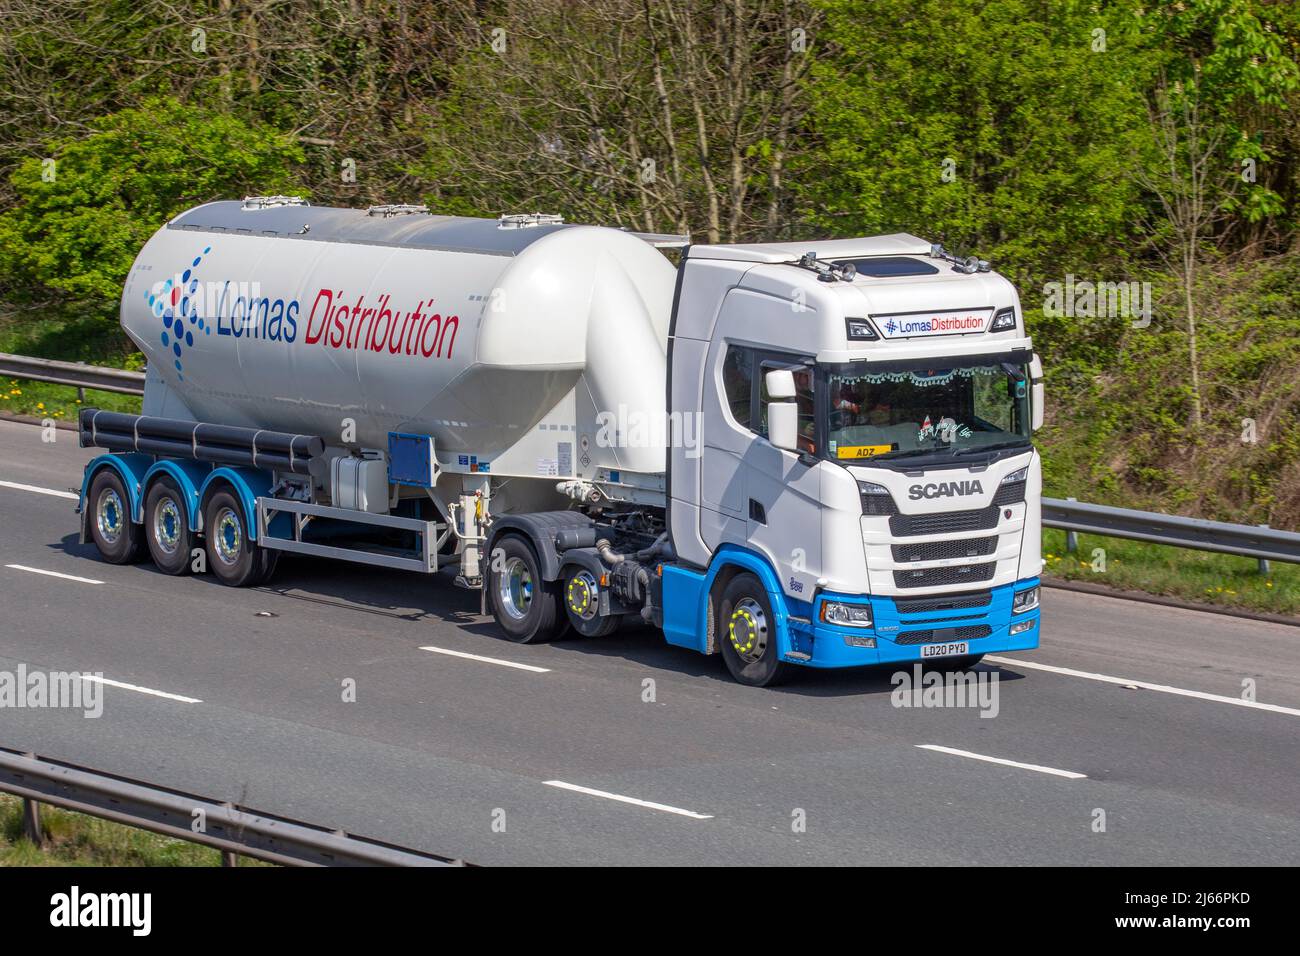 ADZ nommé pilote conduisant Lomas distribution, Tanker opérateur de l'année: Scania 12742cc camion sur l'autoroute M61 Royaume-Uni Banque D'Images